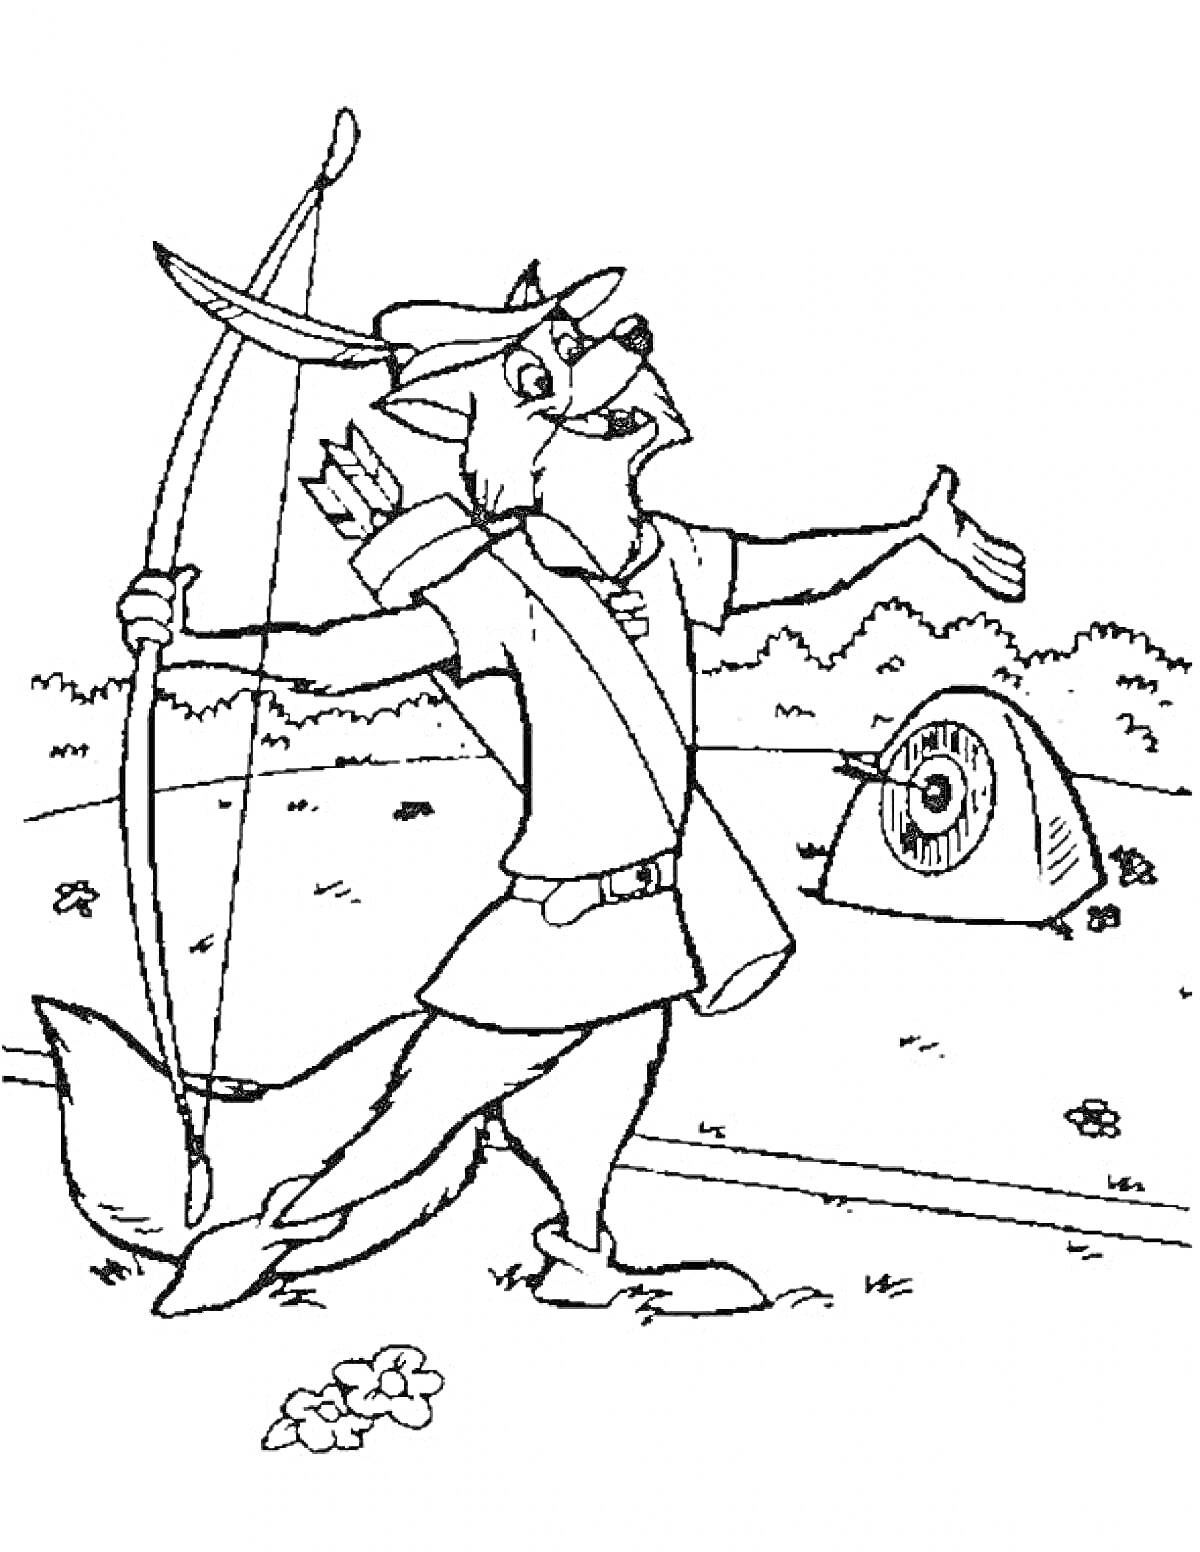 Лис-Робин Гуд с луком и стрелами, мишень и кусты на фоне, цветы на переднем плане